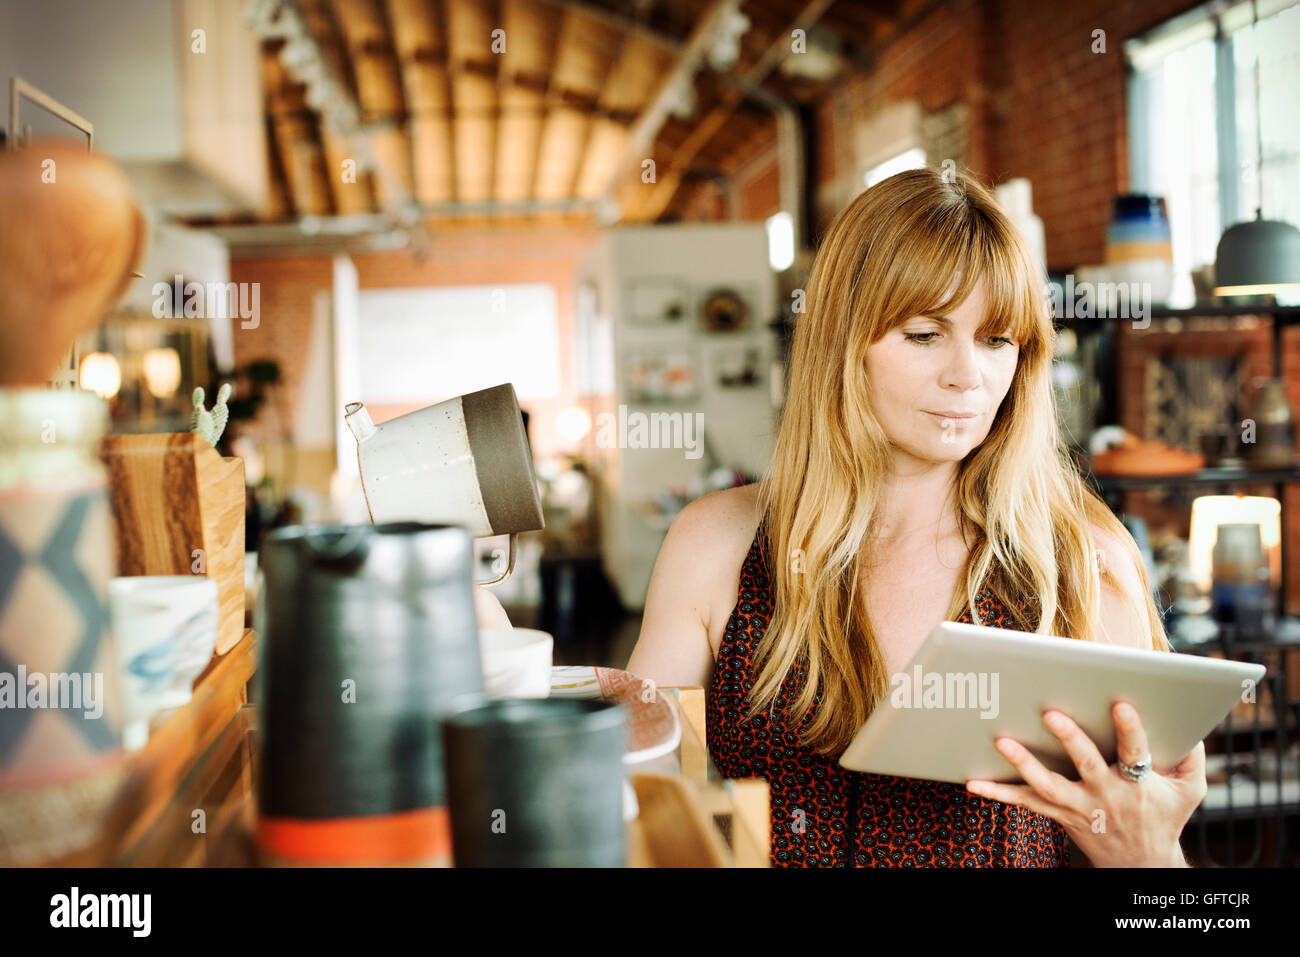 Femme dans un magasin tenant une tablette numérique et verseuse en céramique Banque D'Images